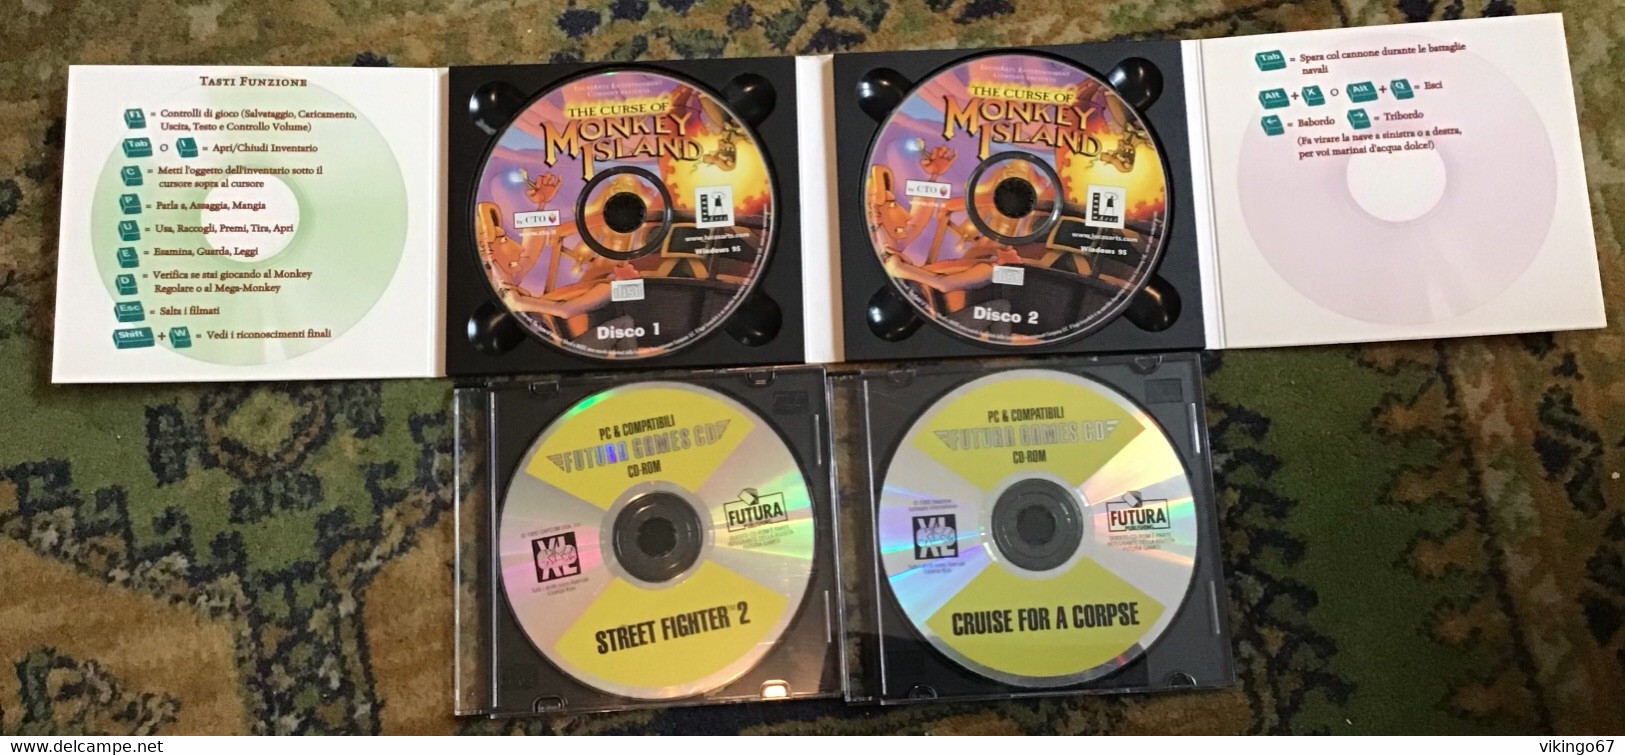 3 giochi per PC - monkey Island 3, street fighter 2 e cruise for a corpse